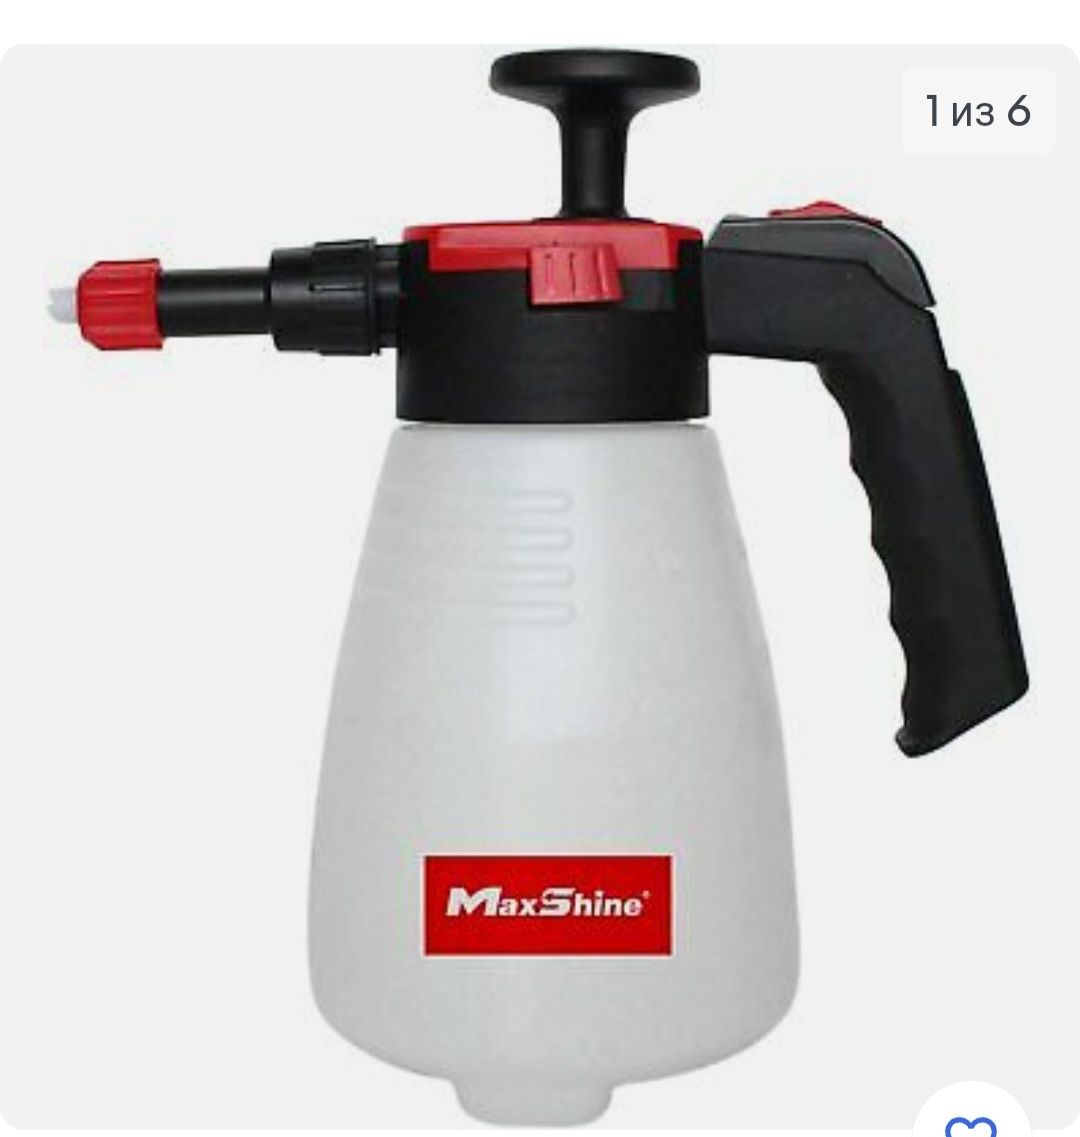 Pump foam sprayer